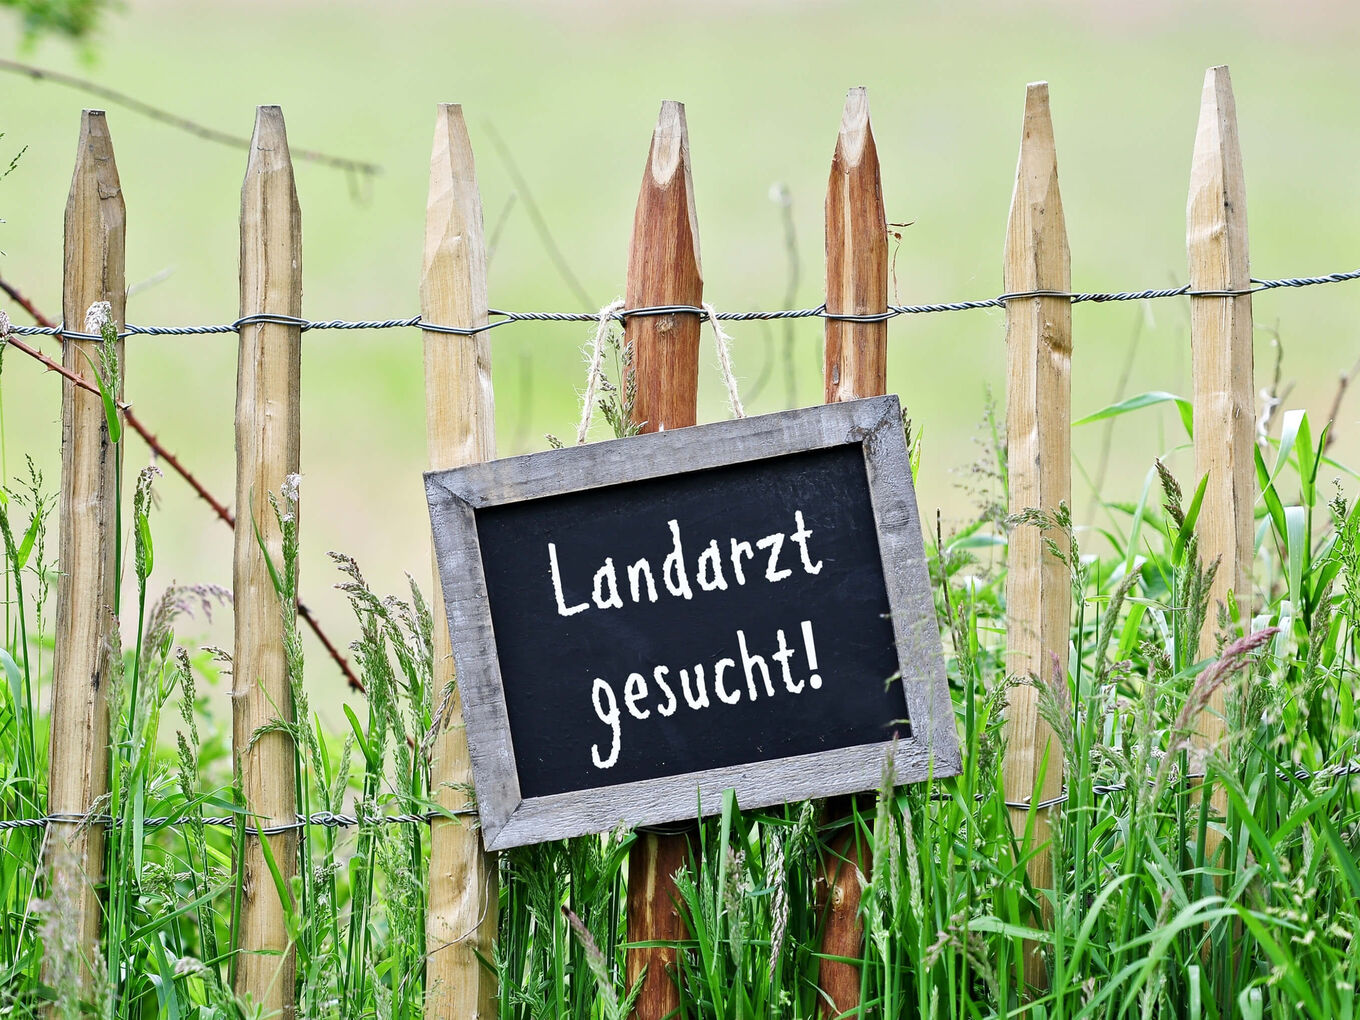 Kreideschild mit Holzrahmen und weißer Aufschrift "Landarzt gesucht" hängt an Holzzaun vor grüner Wiese